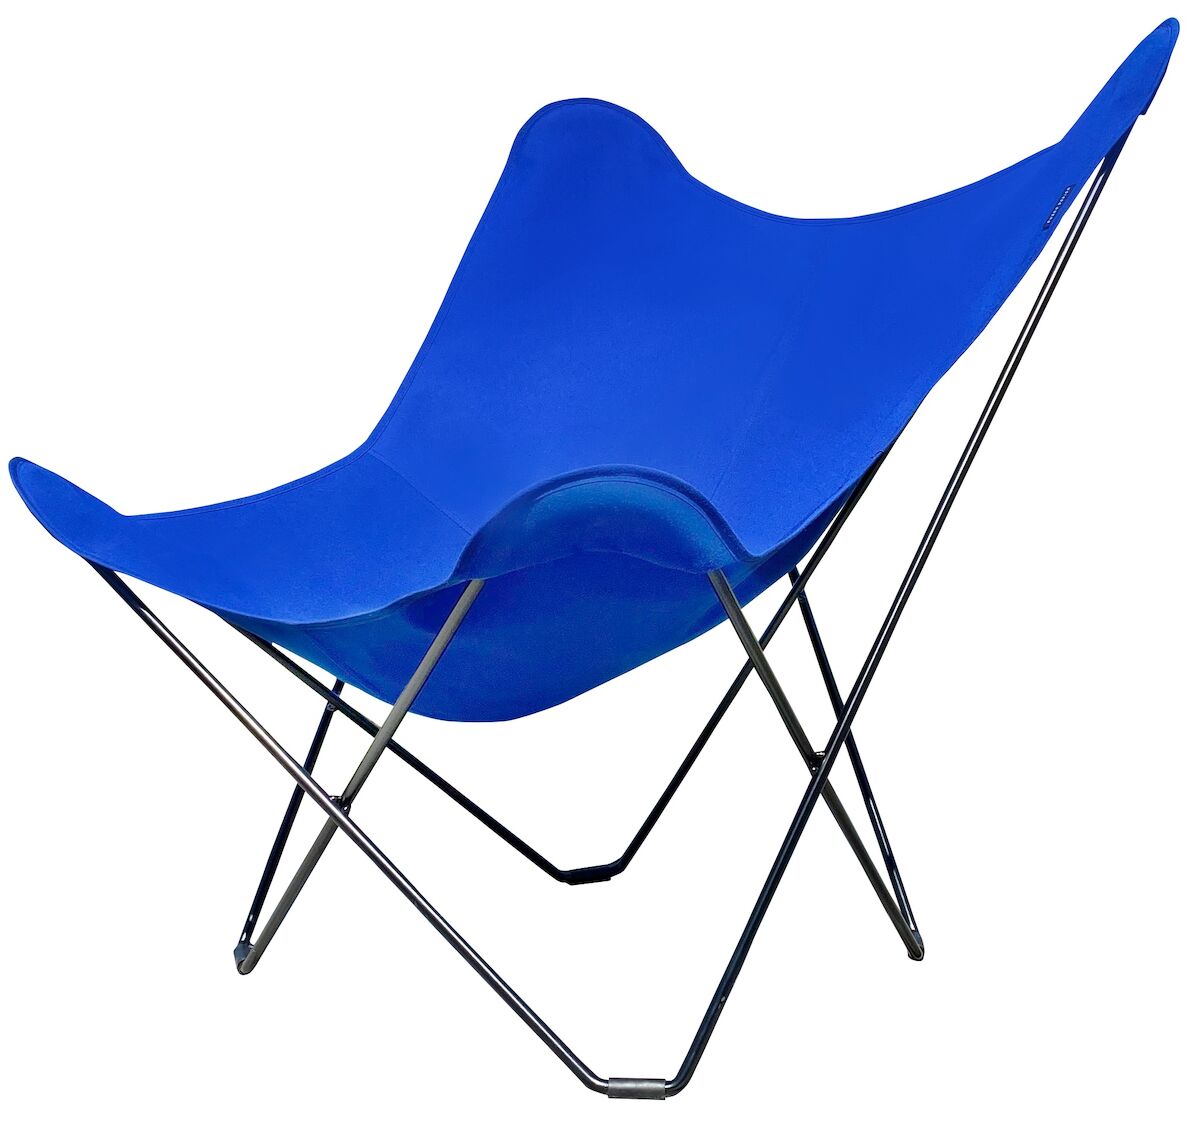 Cuero Sunshine Mariposa lepakkotuoli Sunbrella-kangas sininen musta jalka